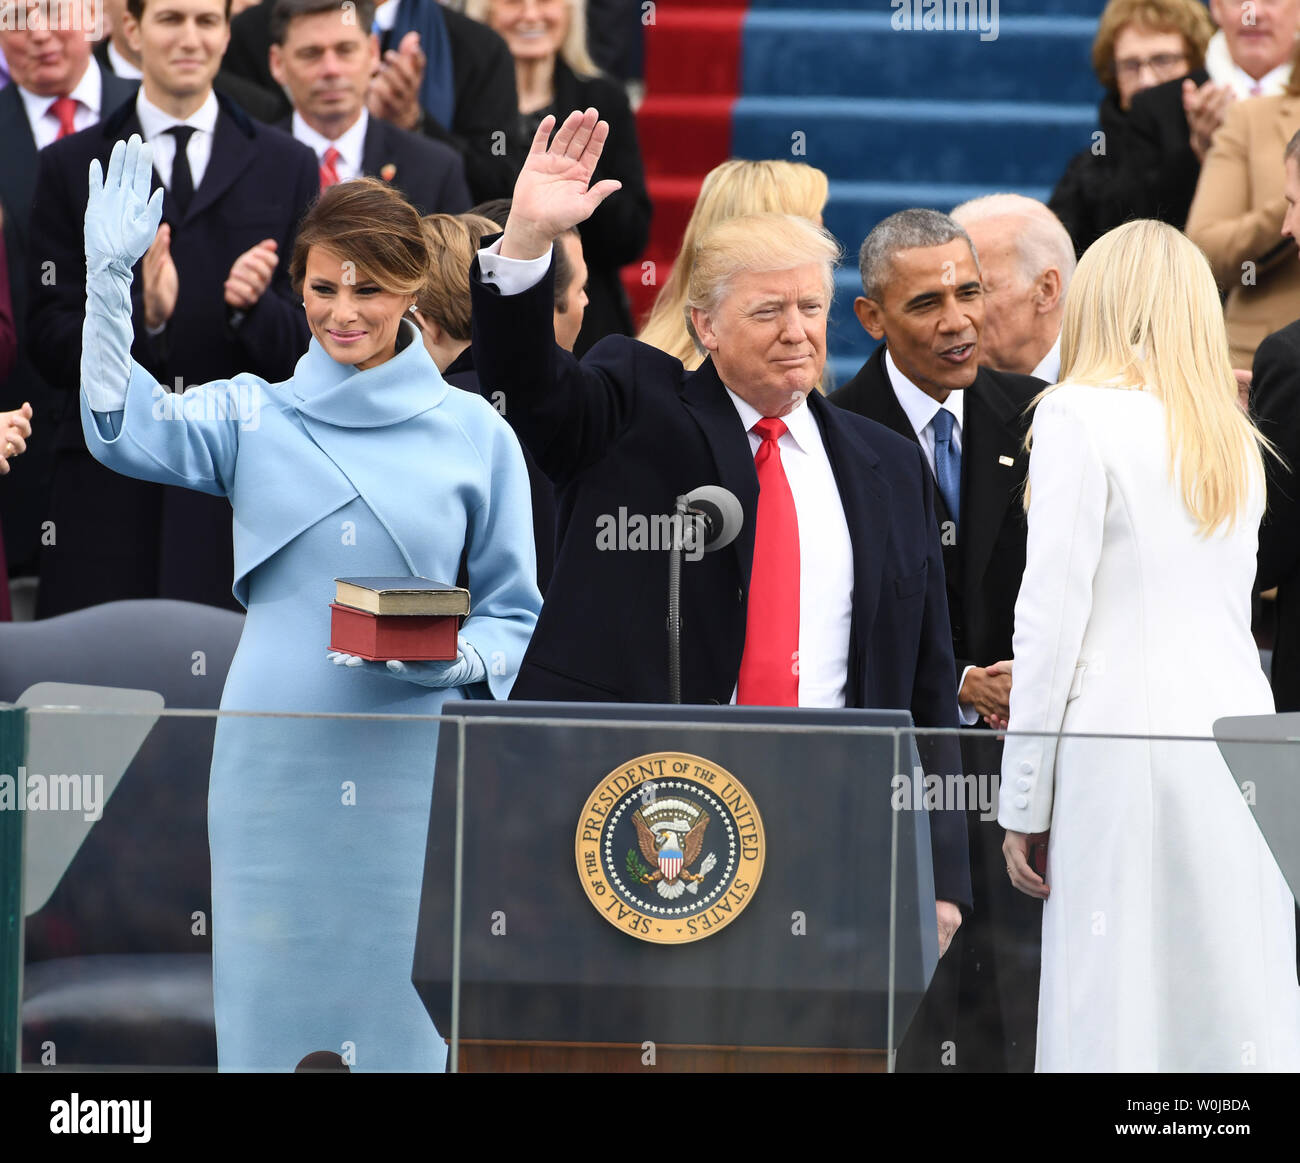 Präsident Donald J. Trumpf Wellen nach dem Amtseid bei der Einweihung am 20 Januar, 2017 in Washington, D.C. Trump wurde der 45. Präsident der Vereinigten Staaten. Foto von Pat Benic/UPI Stockfoto